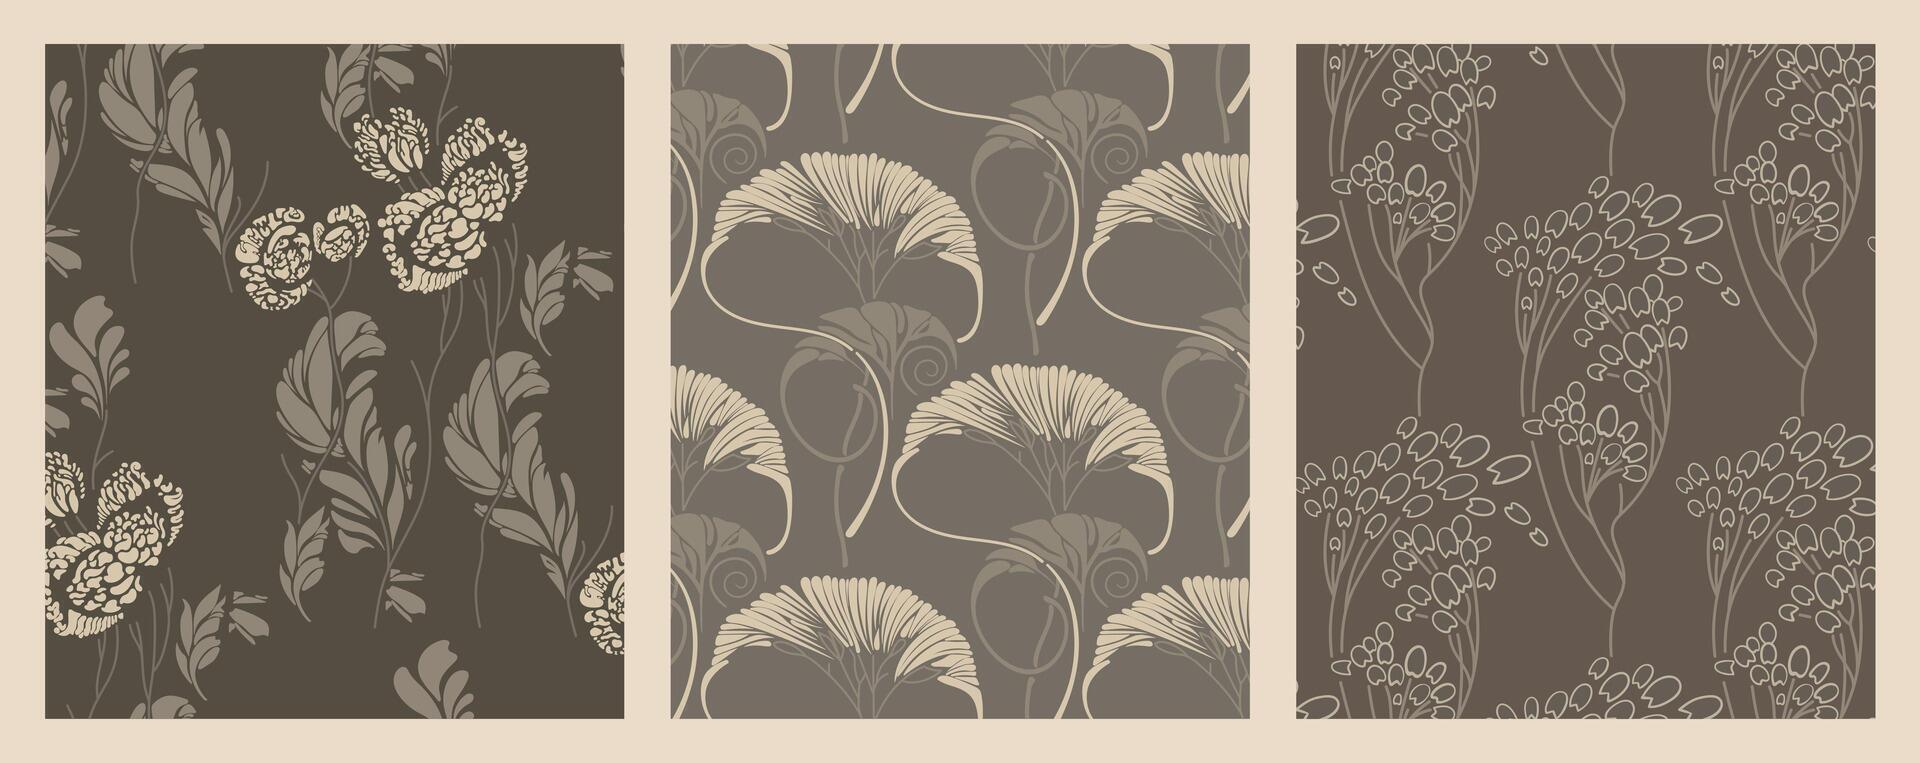 vintage art nouveau ornament Foliage and flora texture seamless pattern set vector